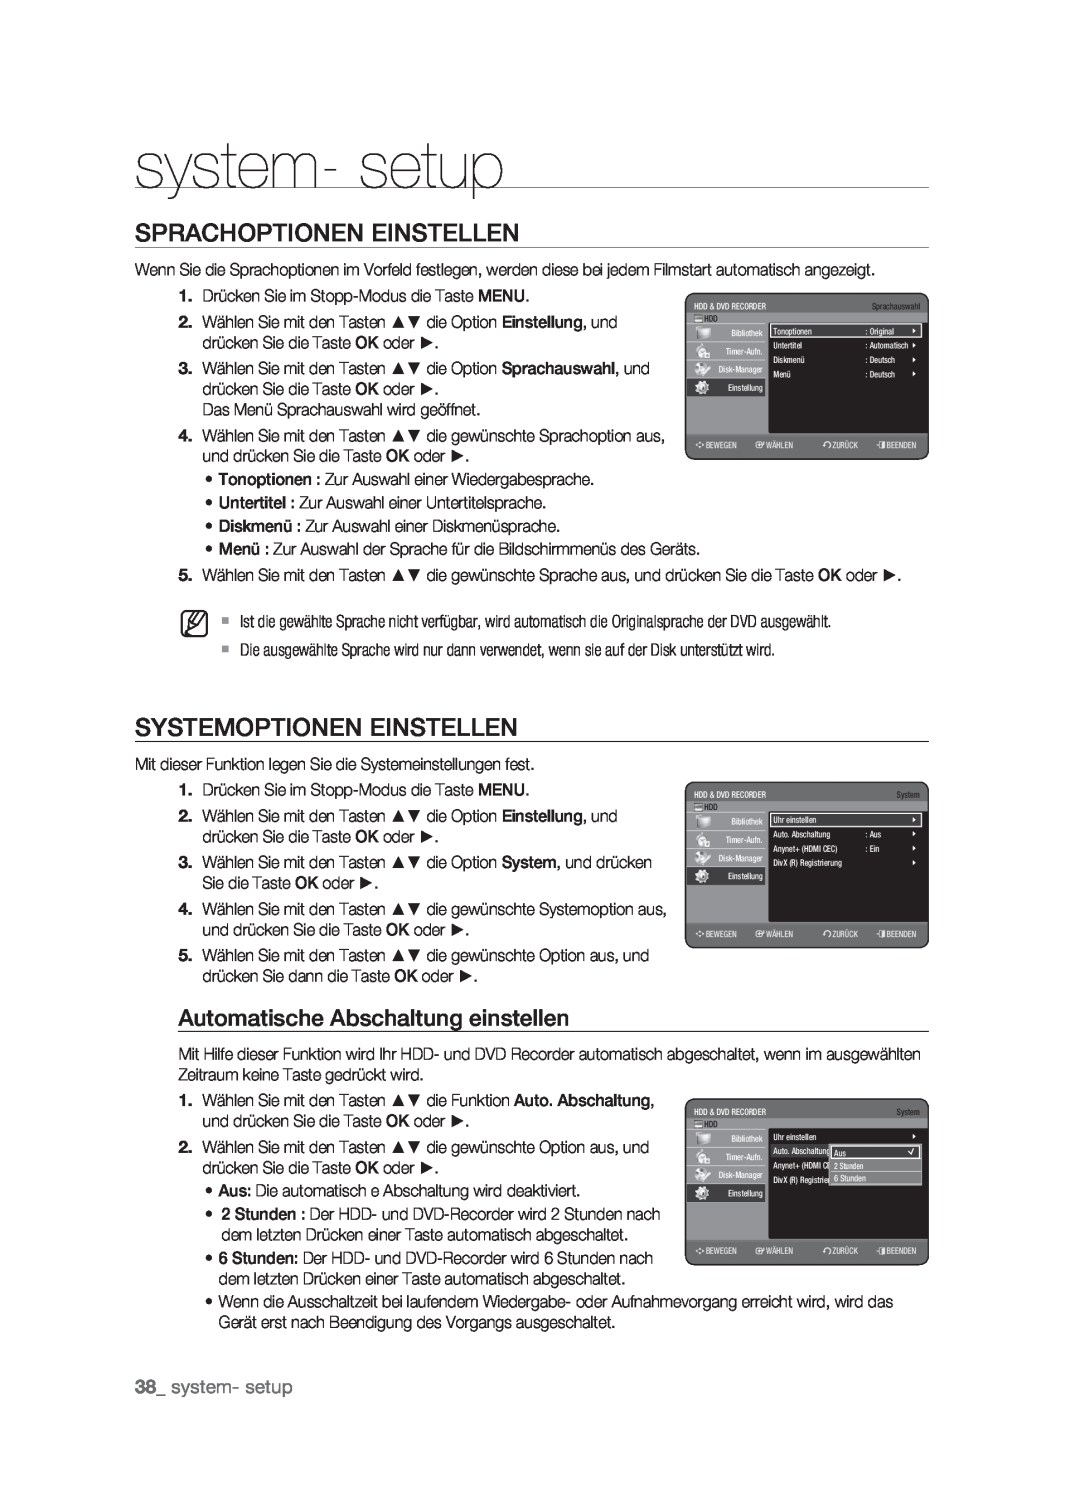 Samsung DVD-HR773/XEG manual Sprachoptionen Einstellen, Systemoptionen Einstellen, Automatische Abschaltung einstellen 